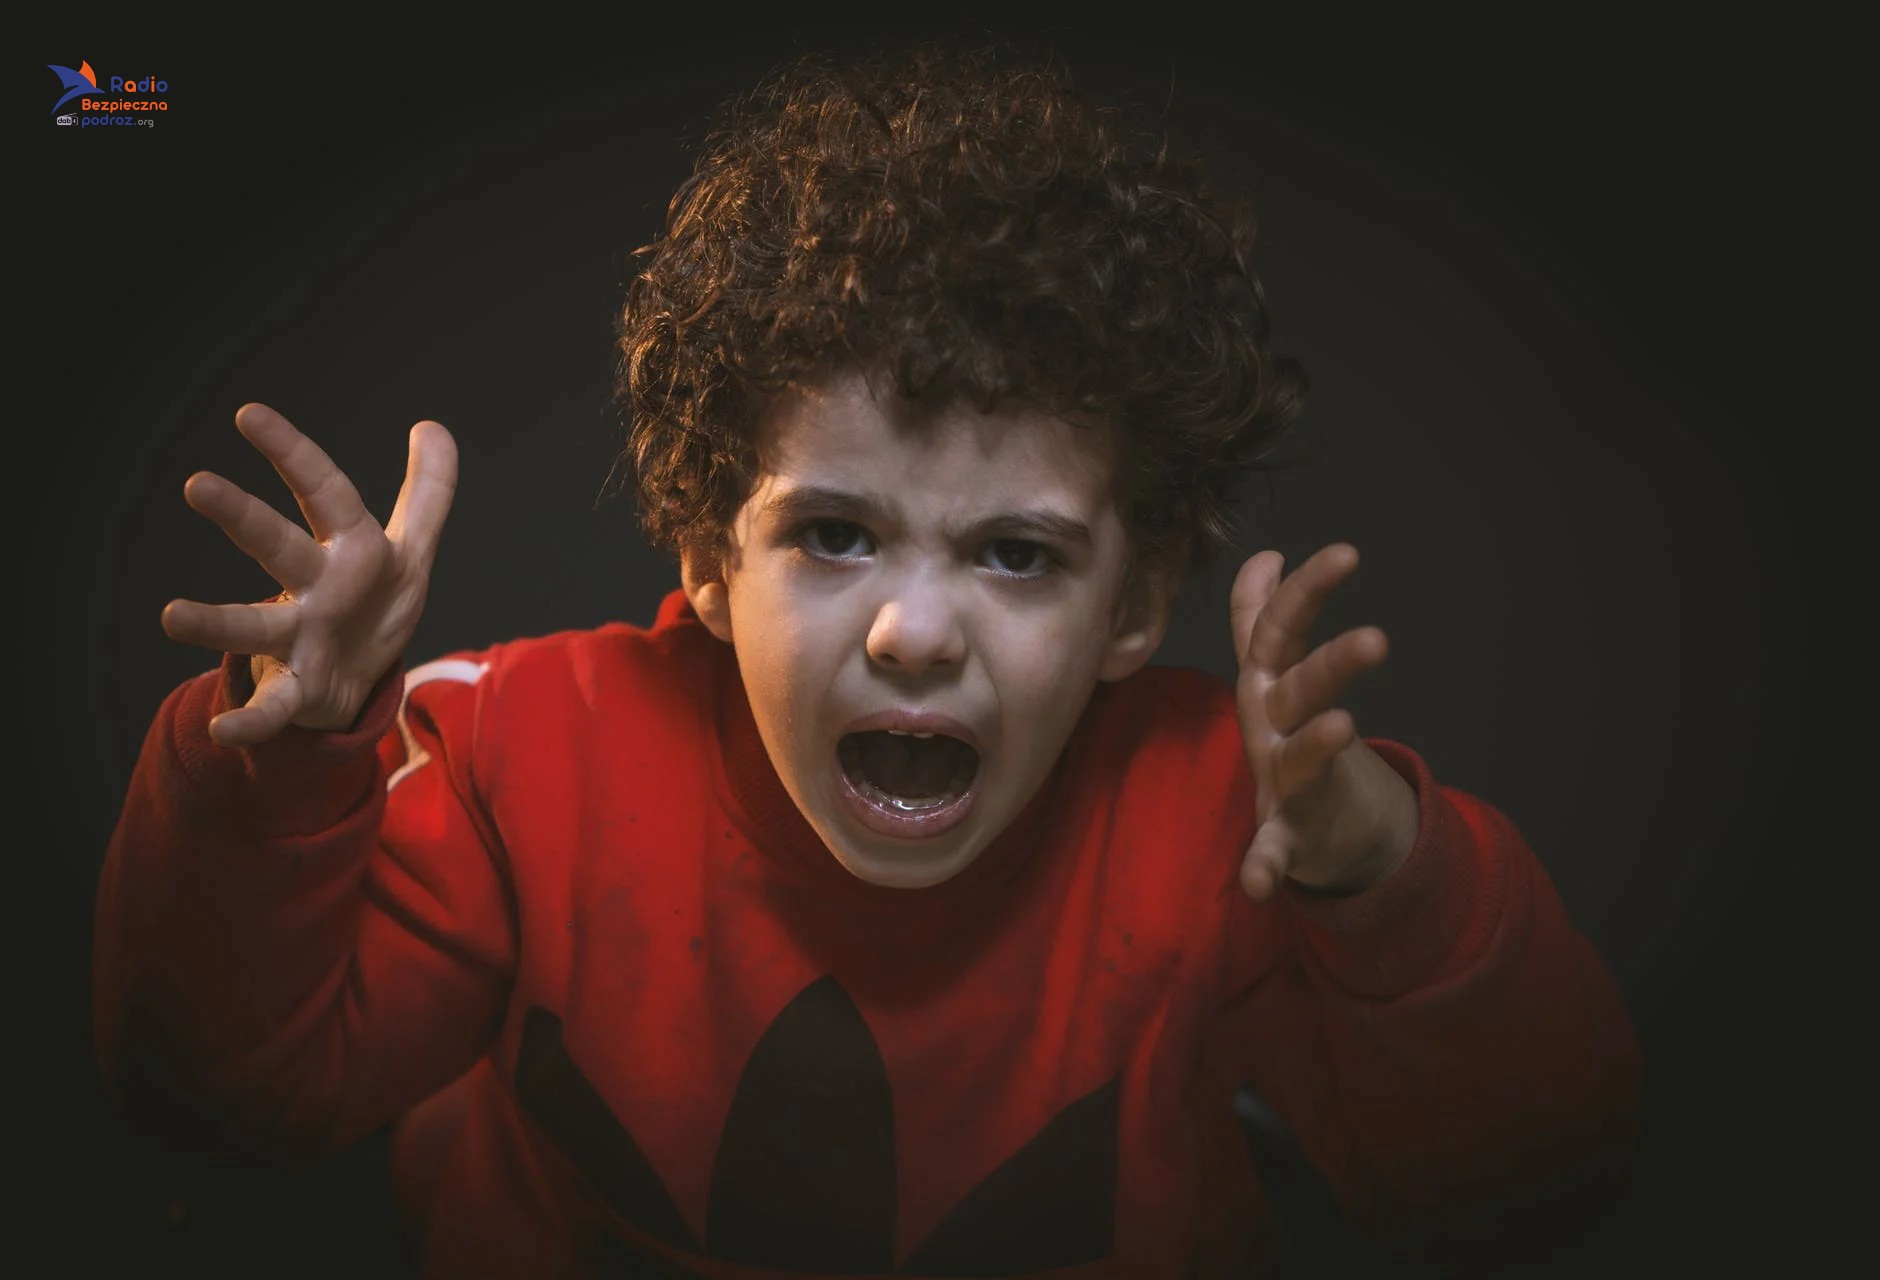 Leczenie psychiatryczne u dzieci – obawy rodziców 